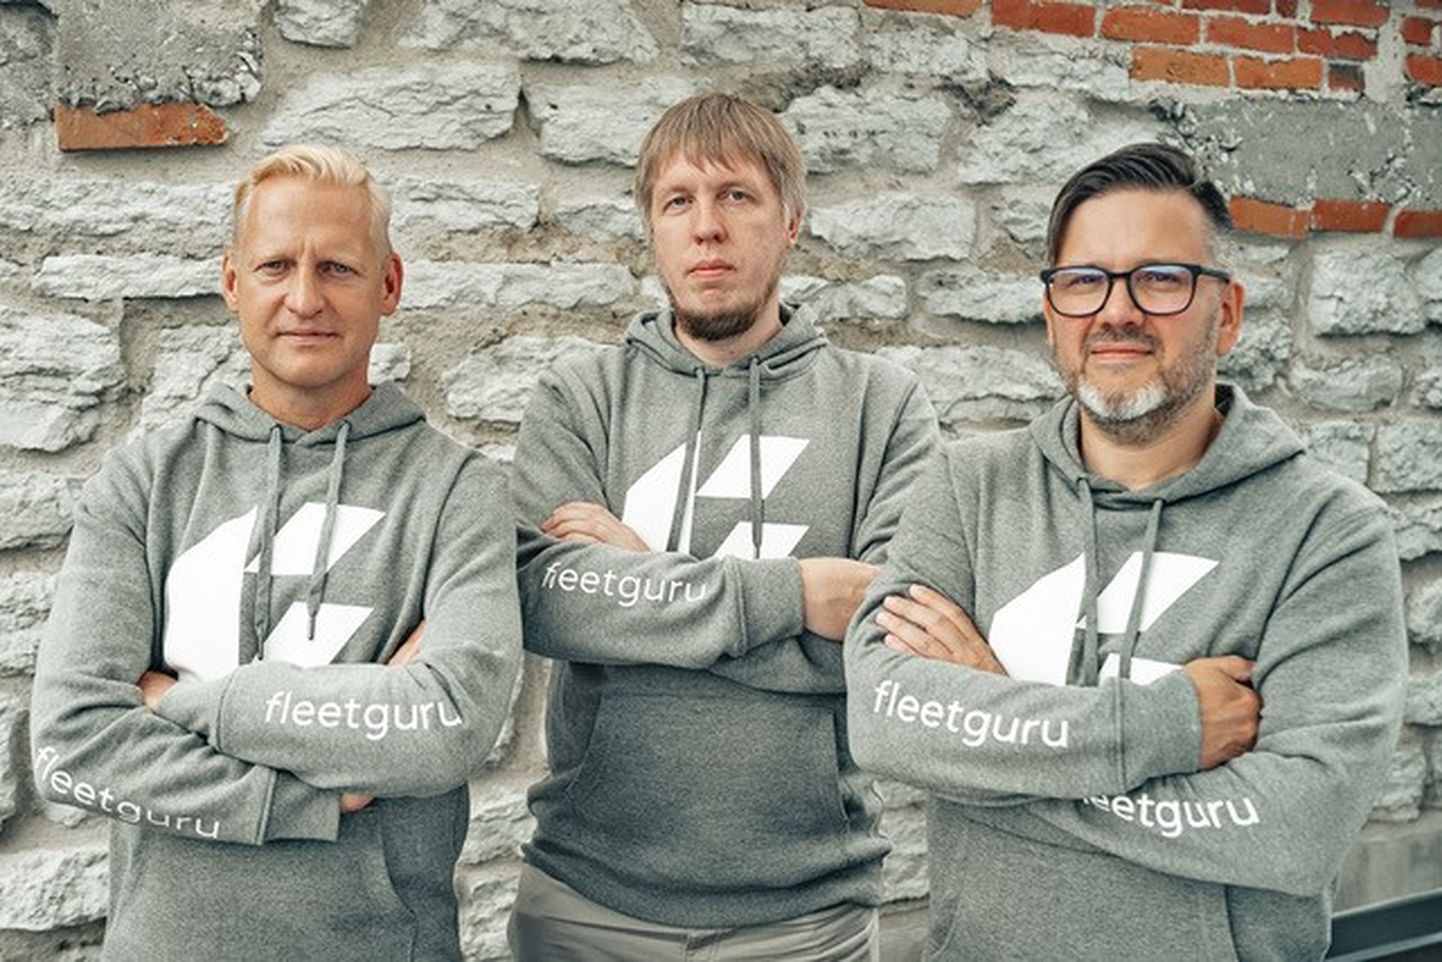 FleetGuru asutajad Toomas Loik (paremalt), Indrek Siitan ja Ivar Vilmer.